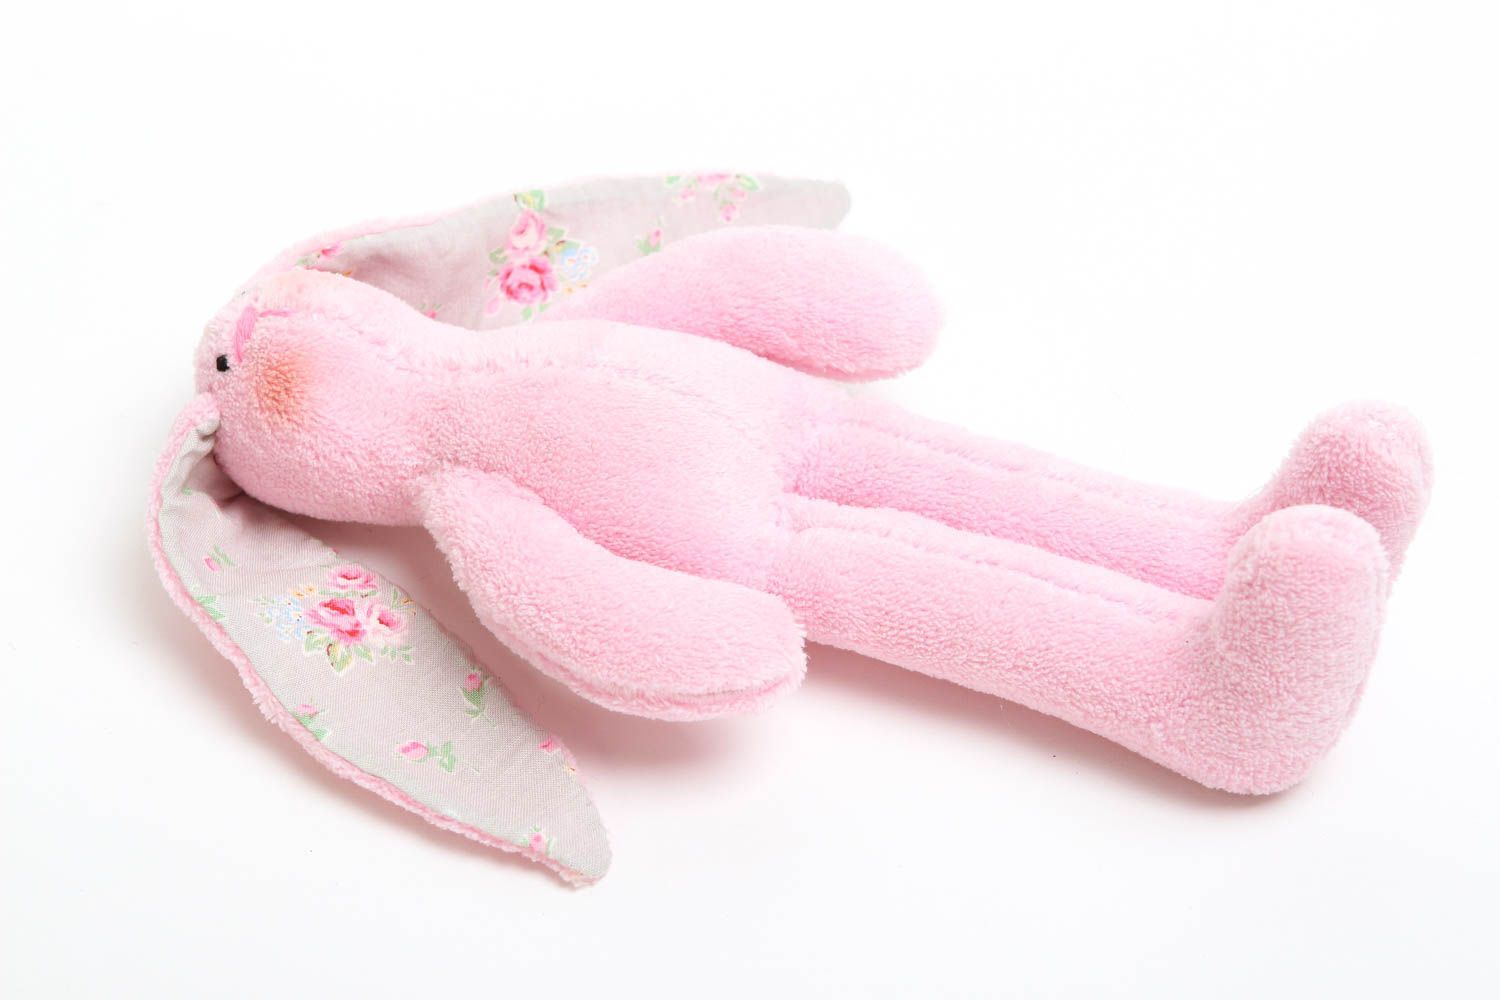 Игрушка заяц ручной работы детская игрушка из ткани мягкая игрушка для девочки фото 3